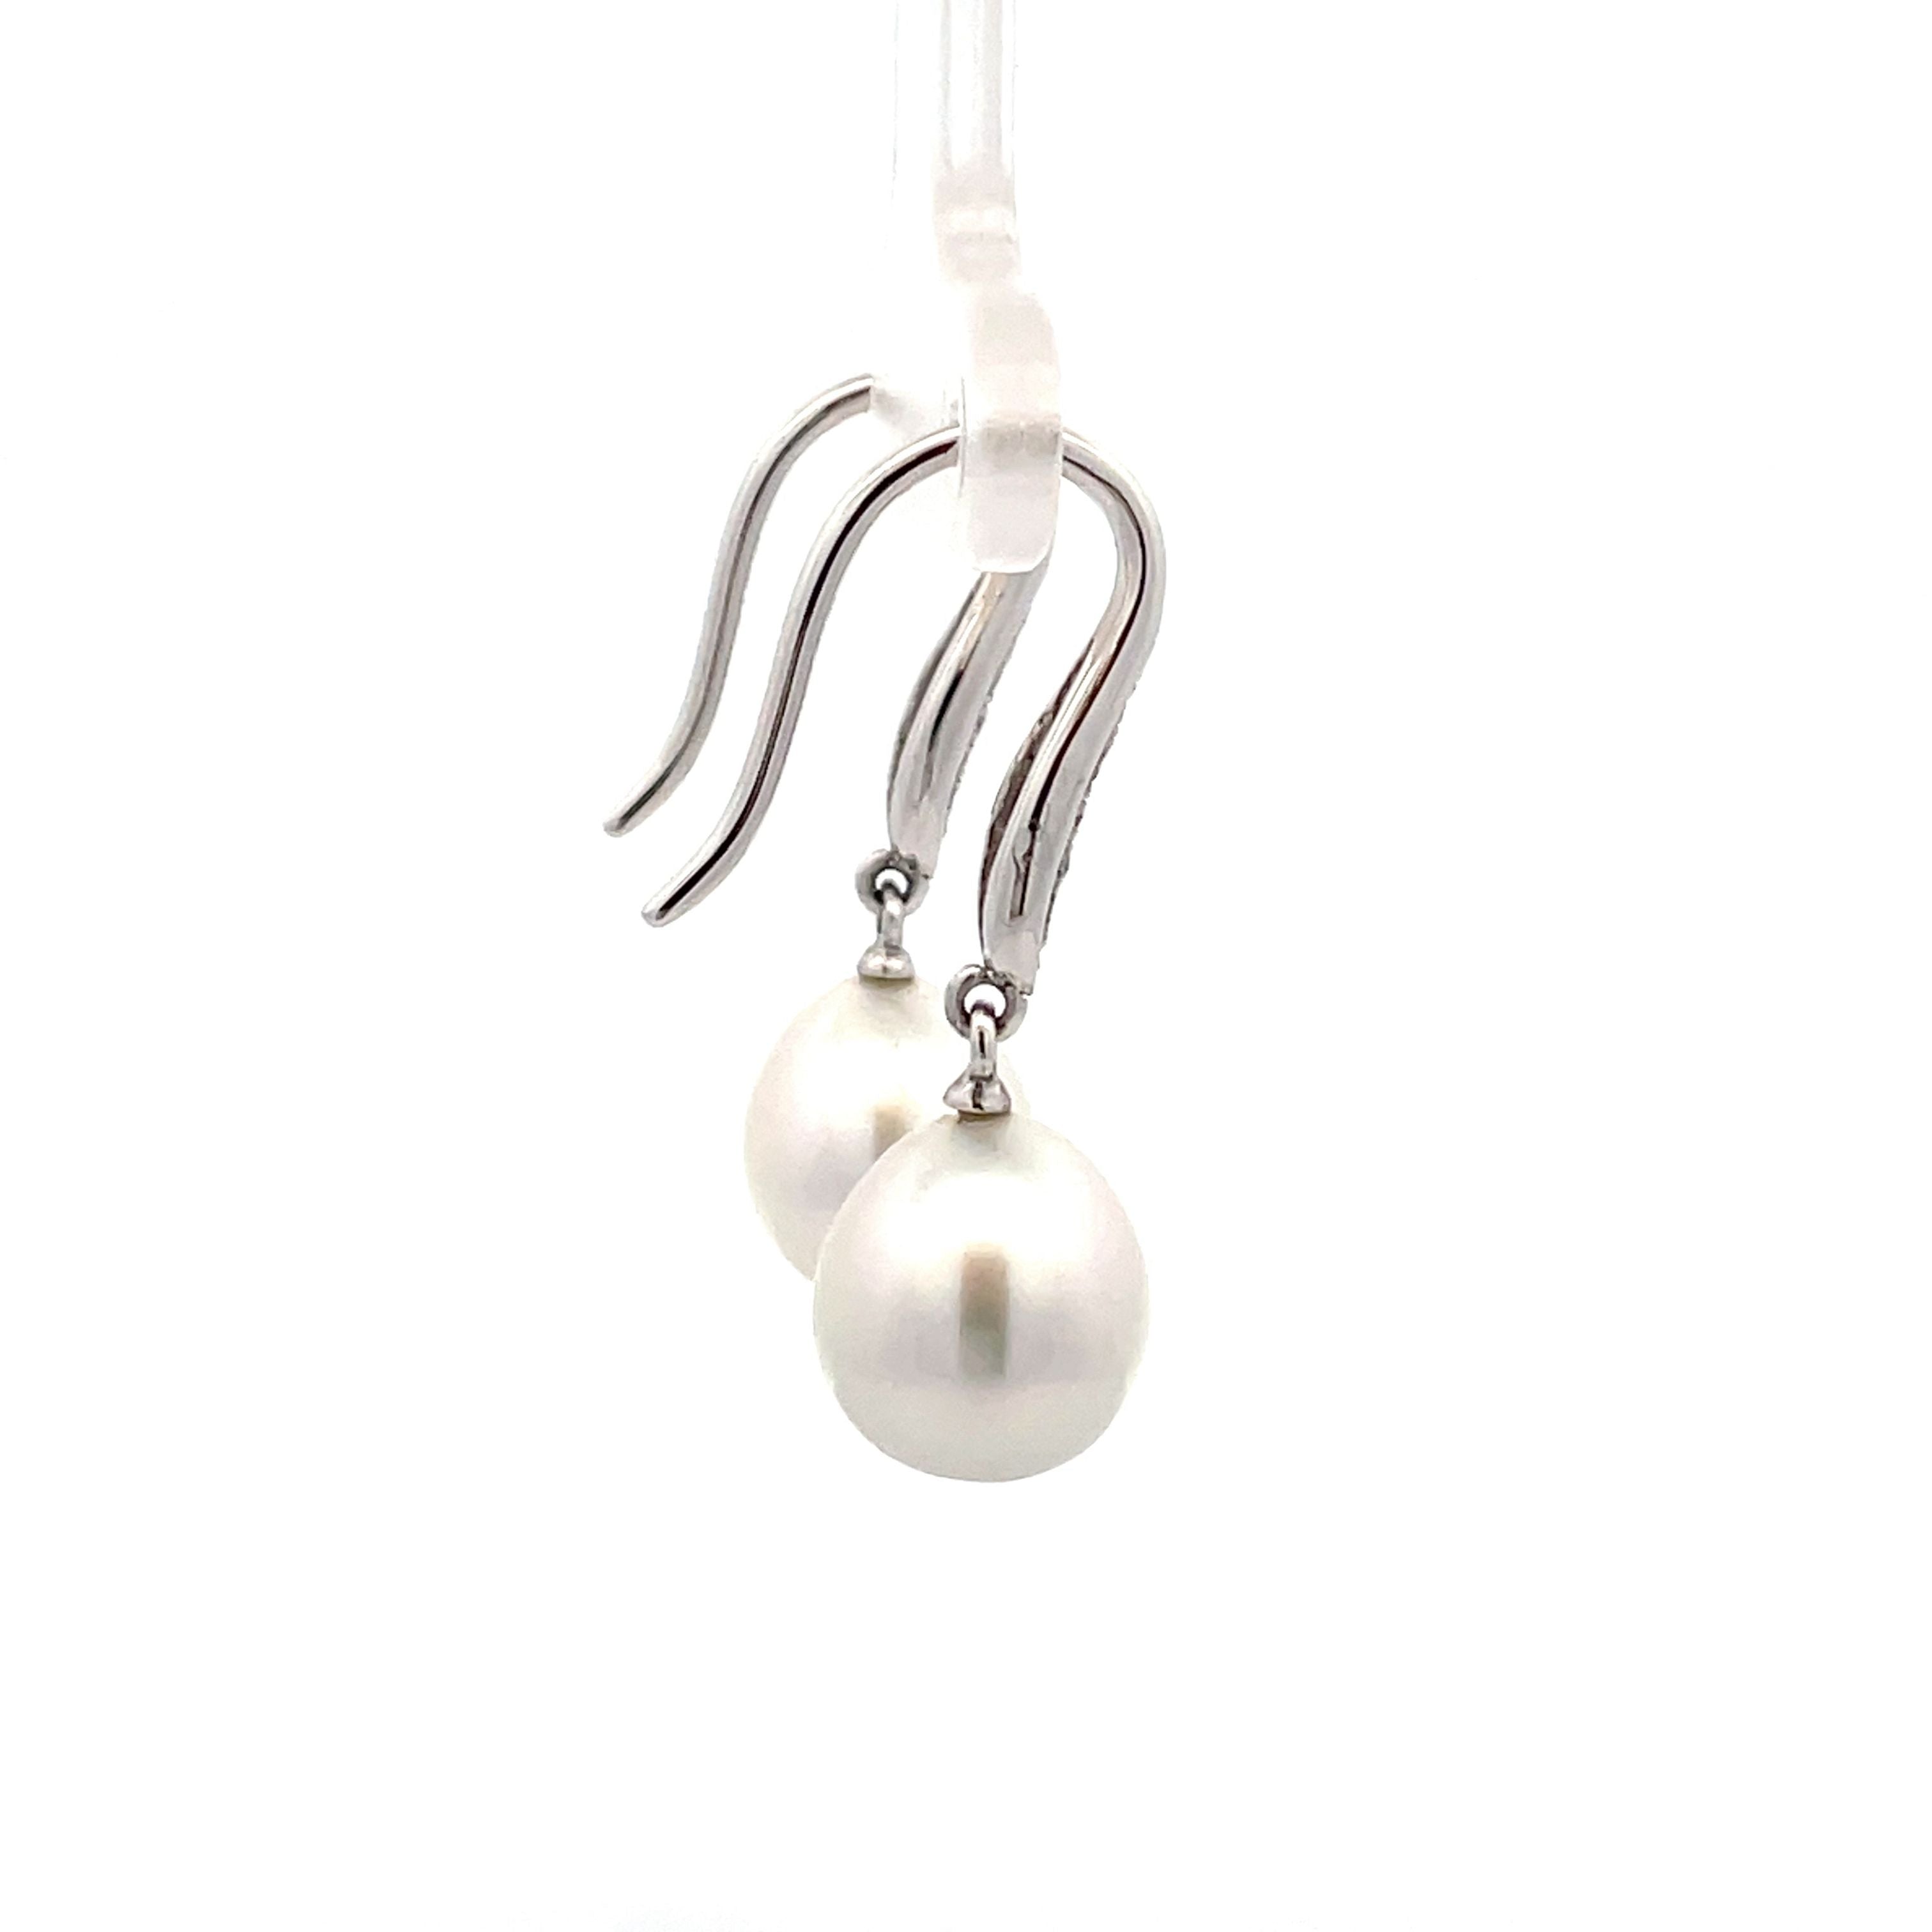 18K White Gold Australian South Sea Cultured Pearl Hook Earrings